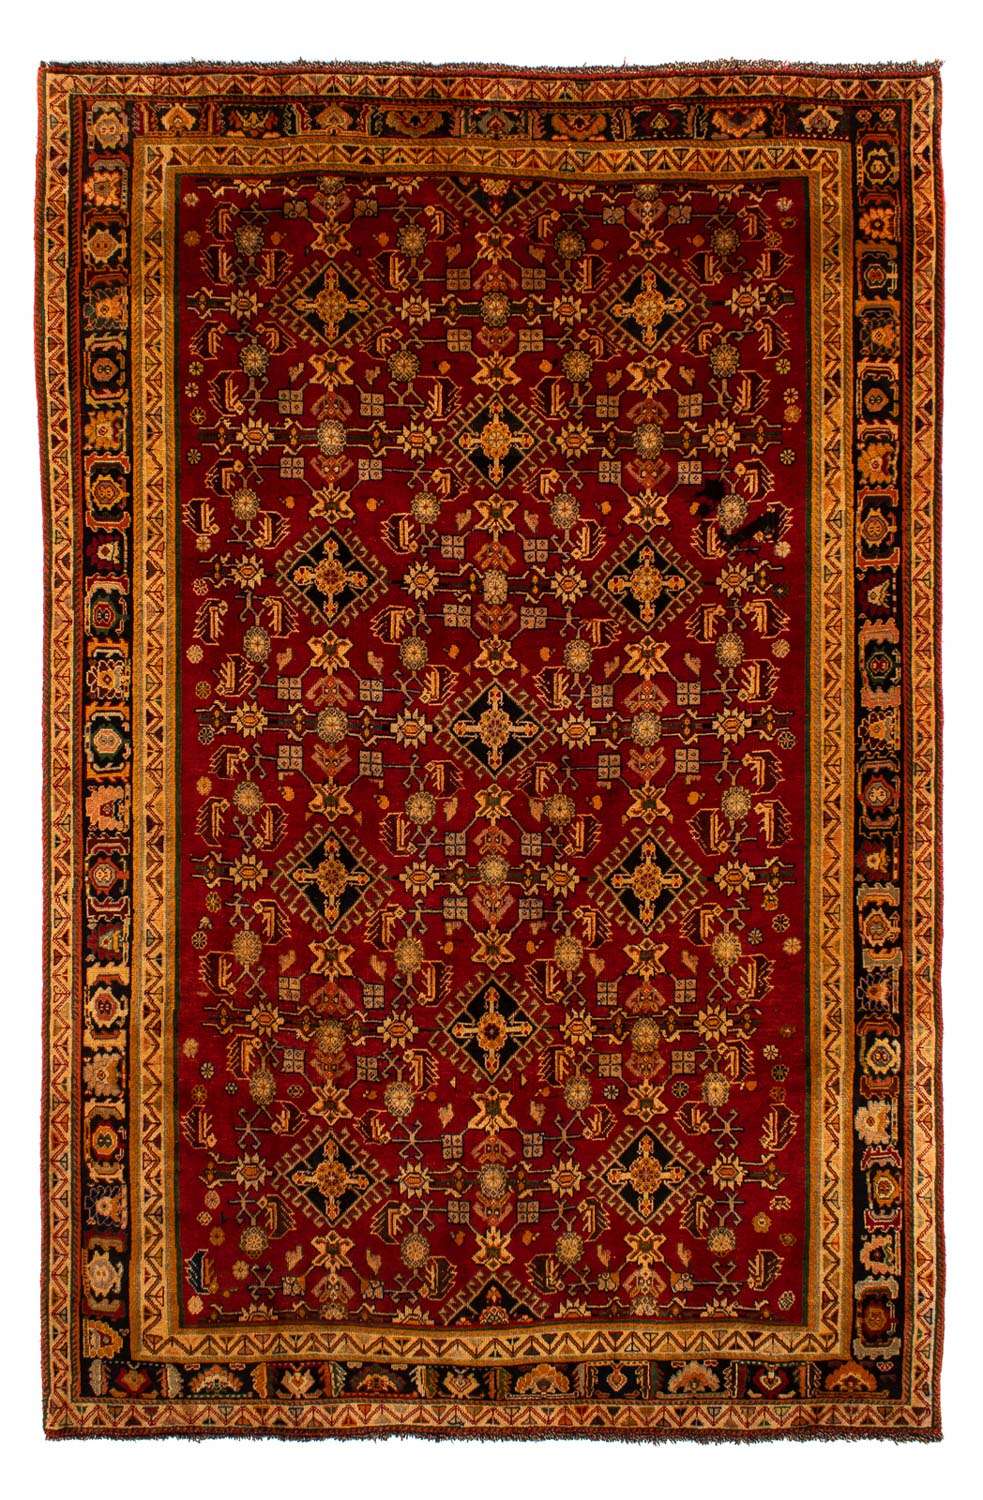 Tapis persan - Nomadic - 296 x 190 cm - rouge foncé